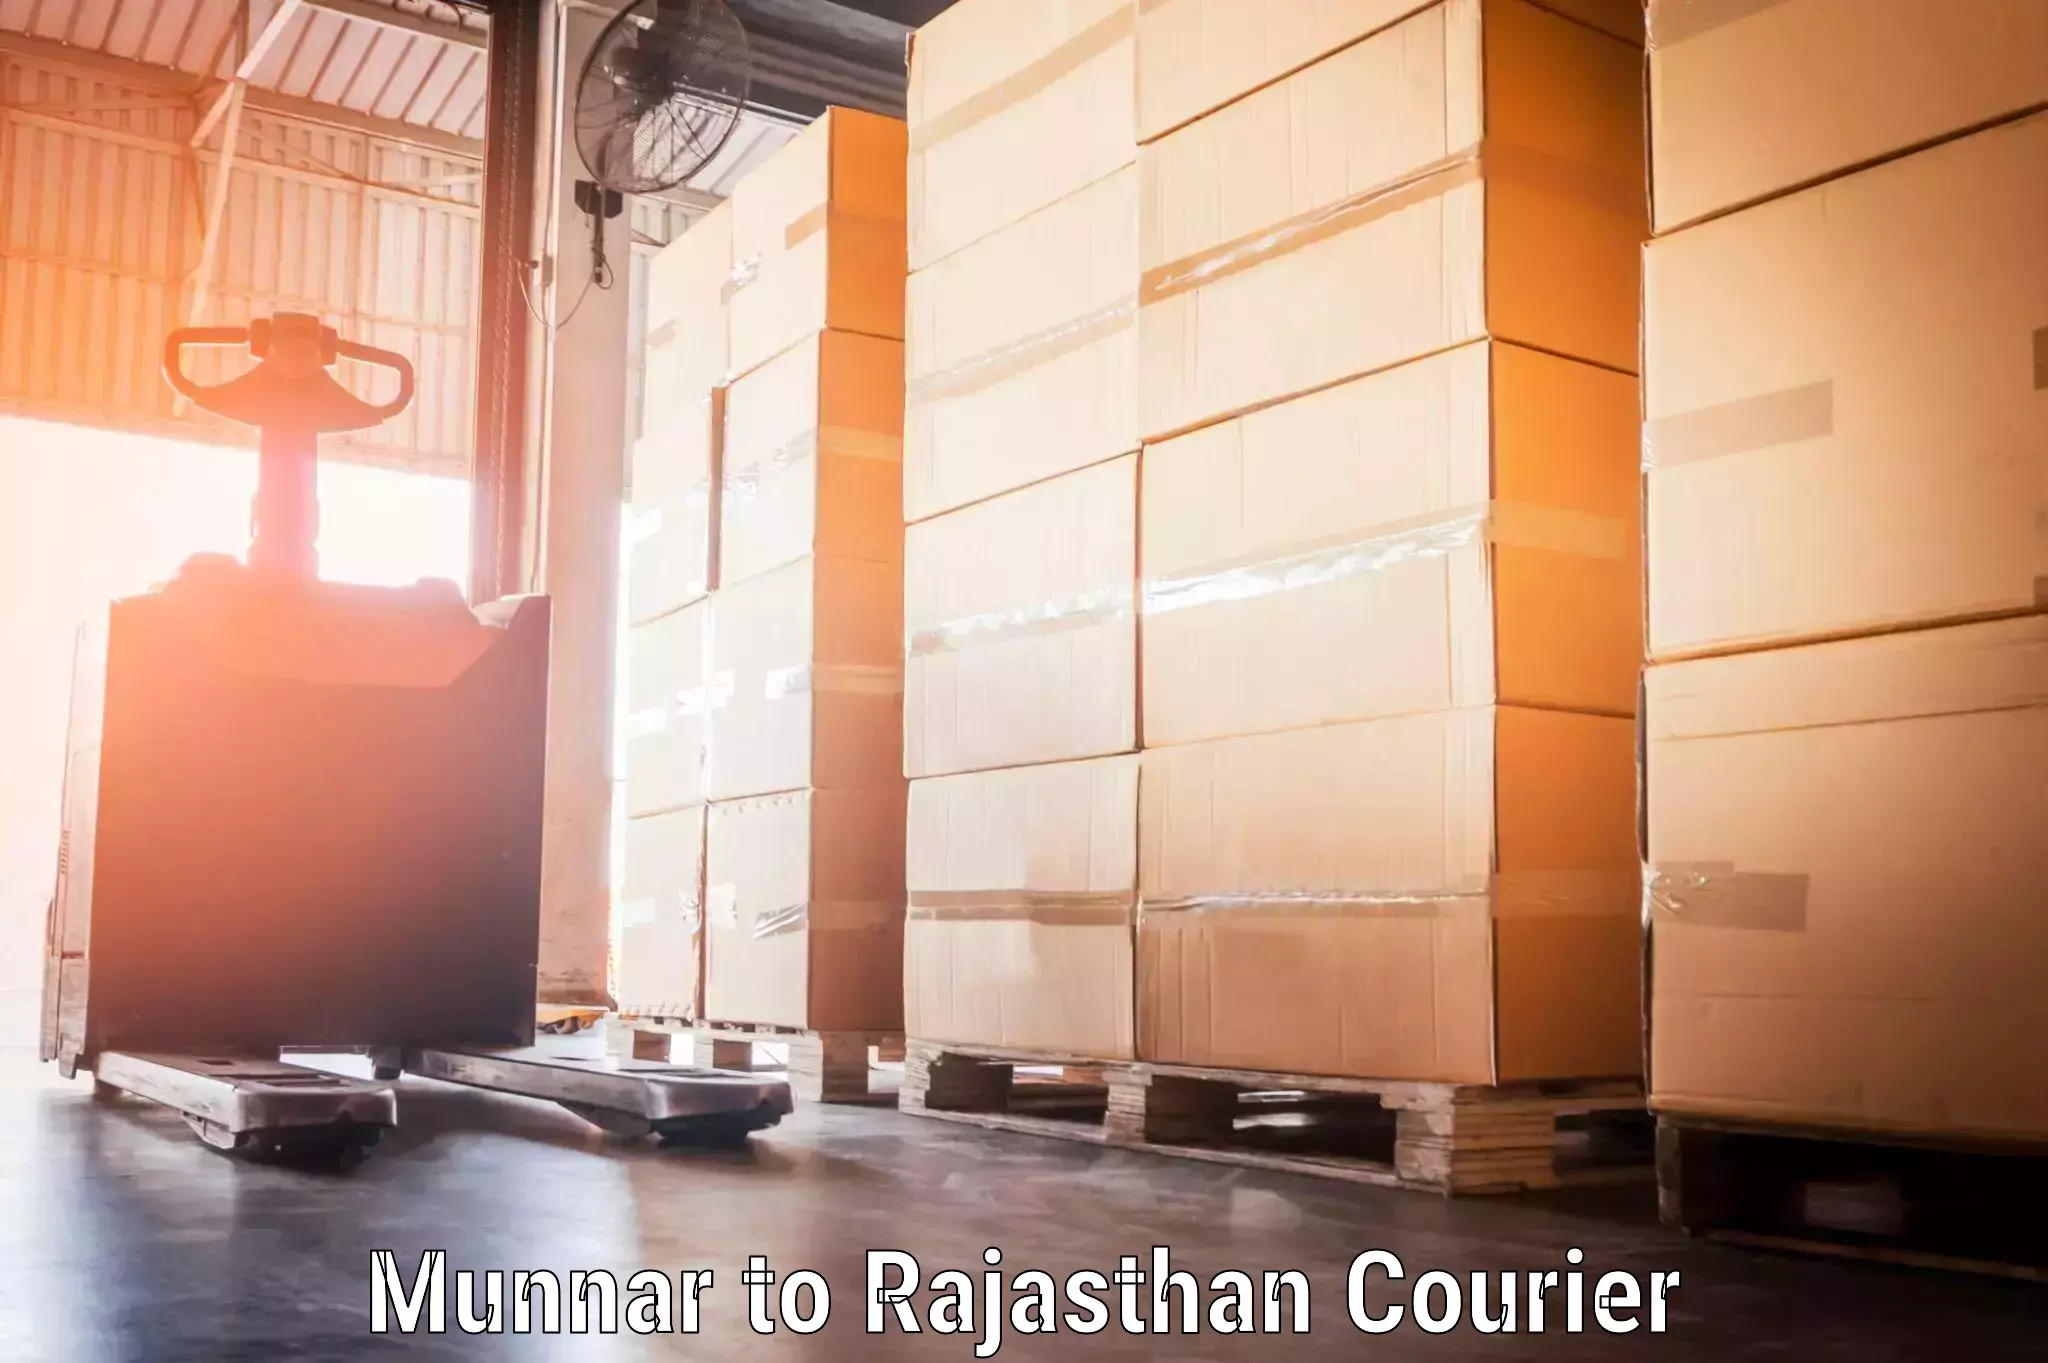 Door-to-door baggage service Munnar to Rajasthan